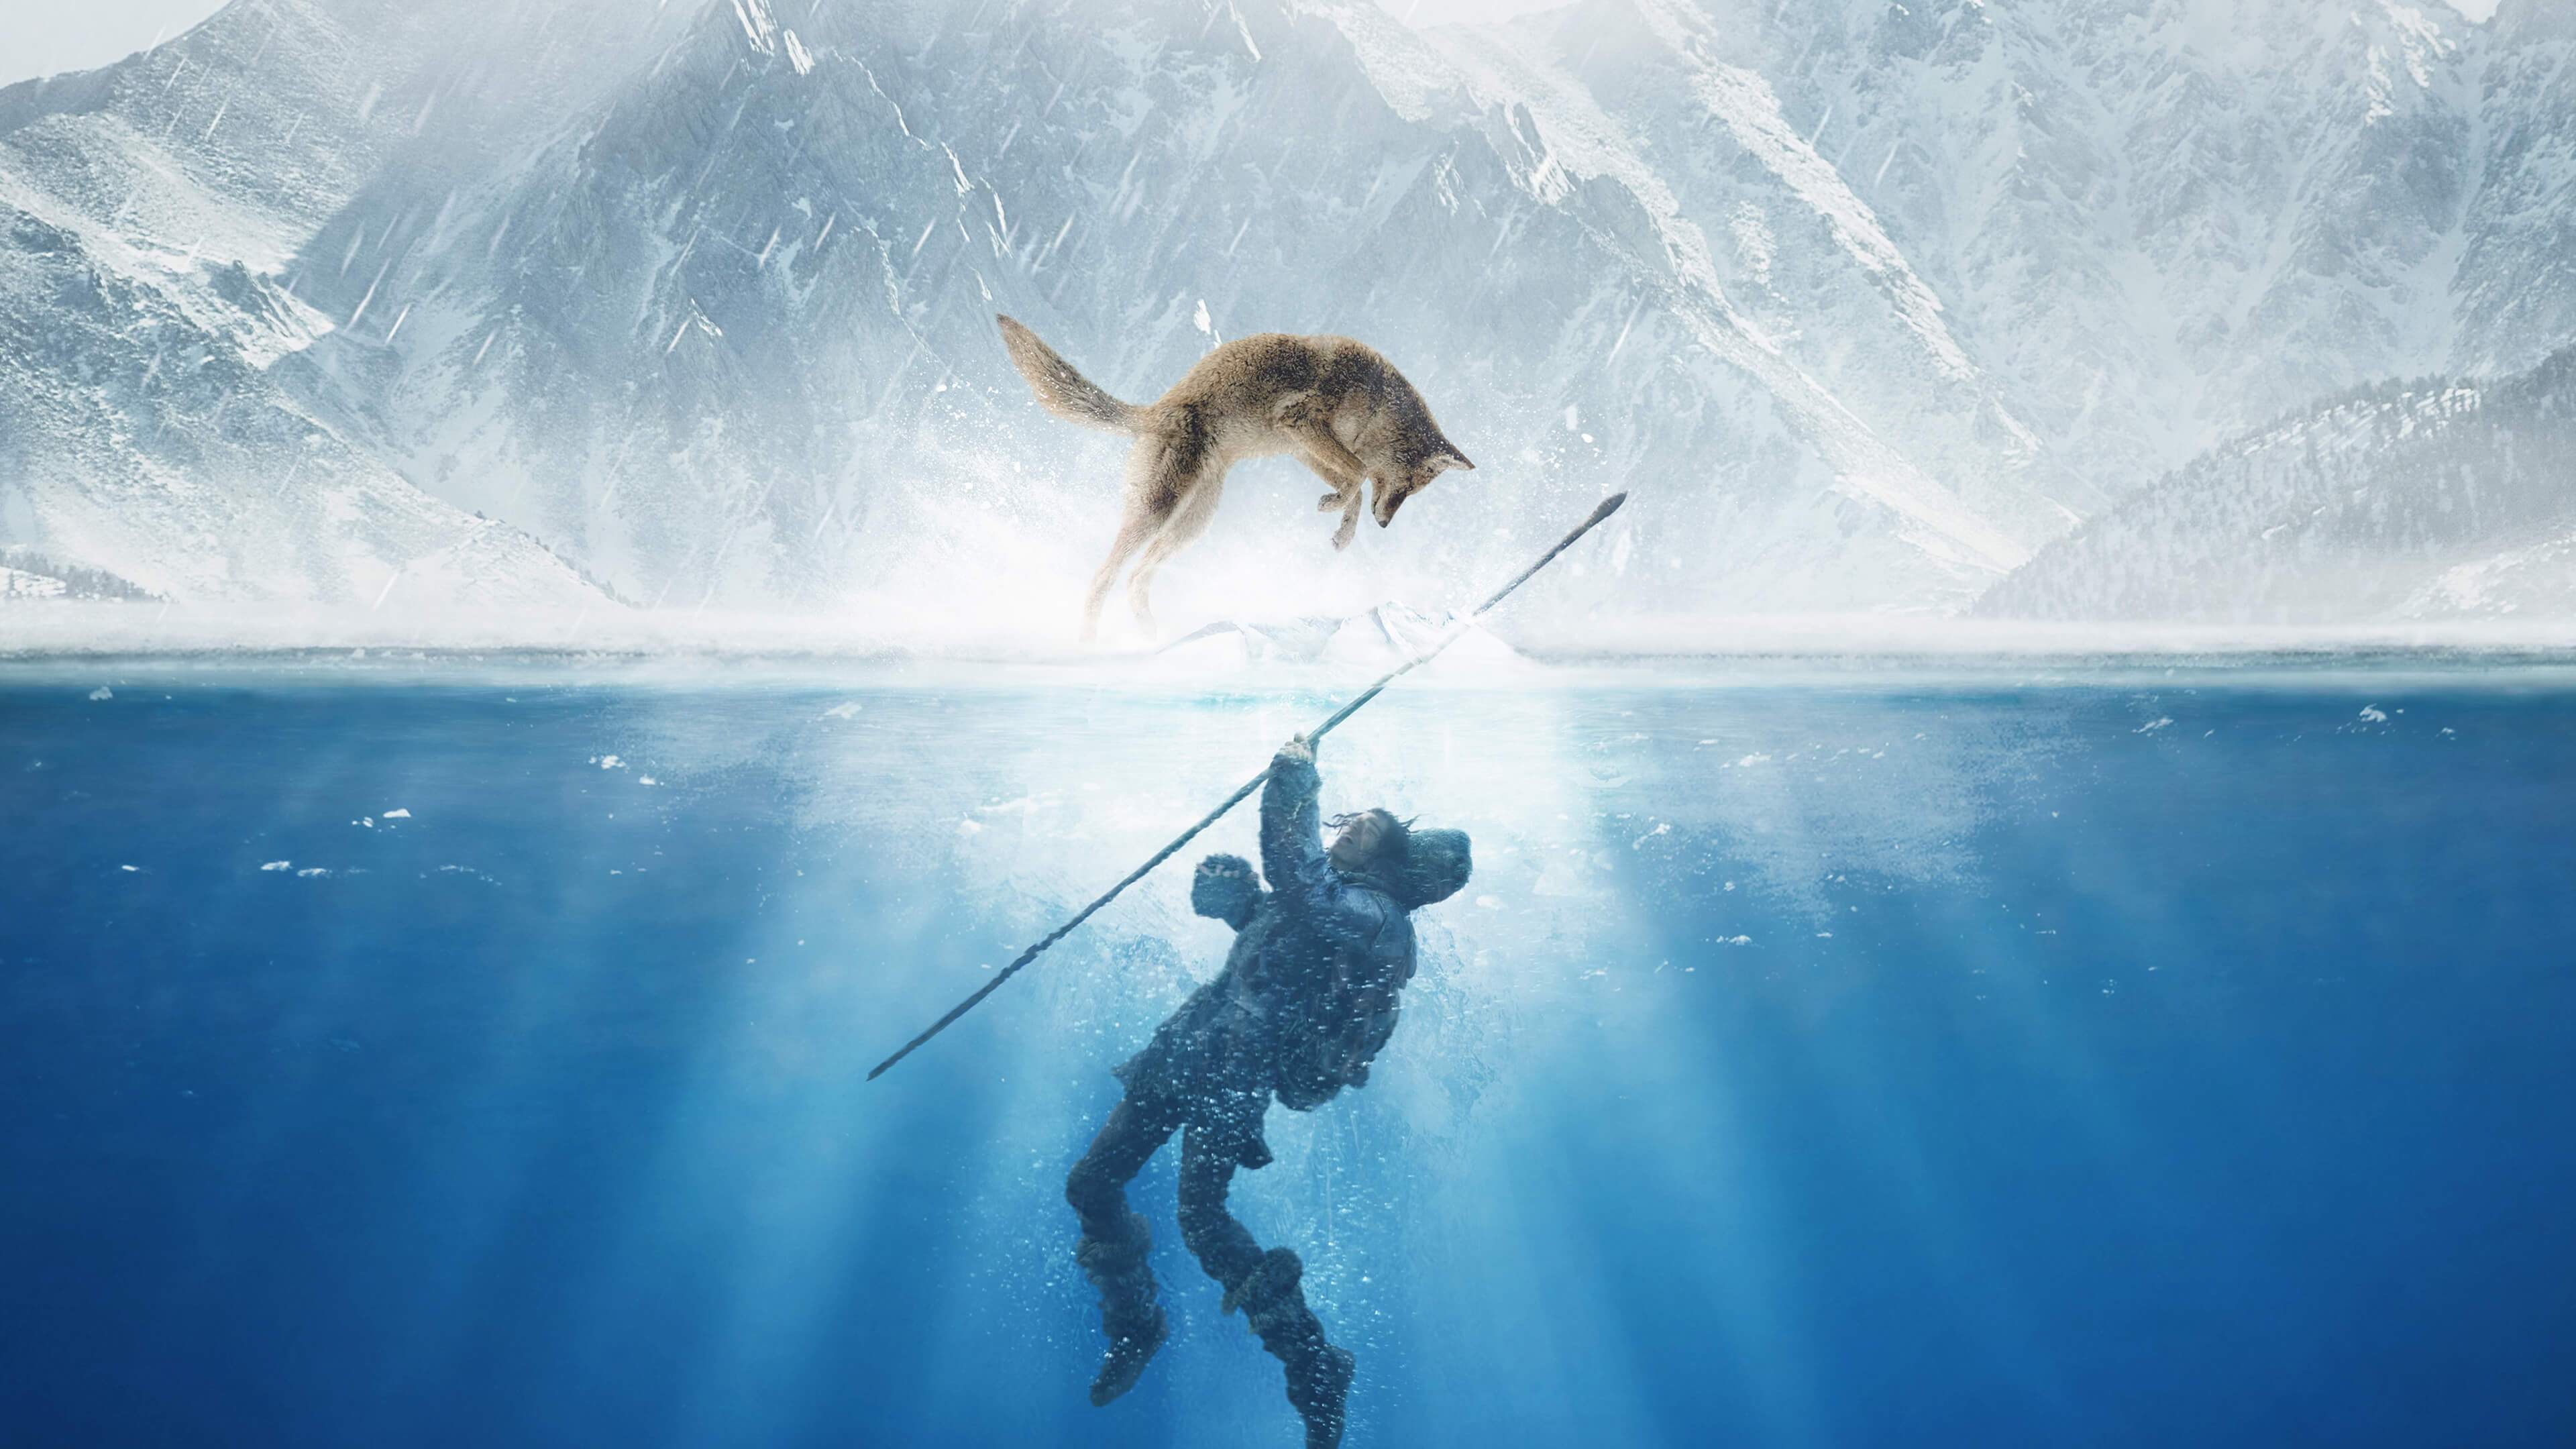 Коди Смит-Макфи / Kodi Smit-McPhee в роли Кеда под водой и волк Альфа над ним в прыжке пытается его спасти, кадр из фильма Альфа / Alpha